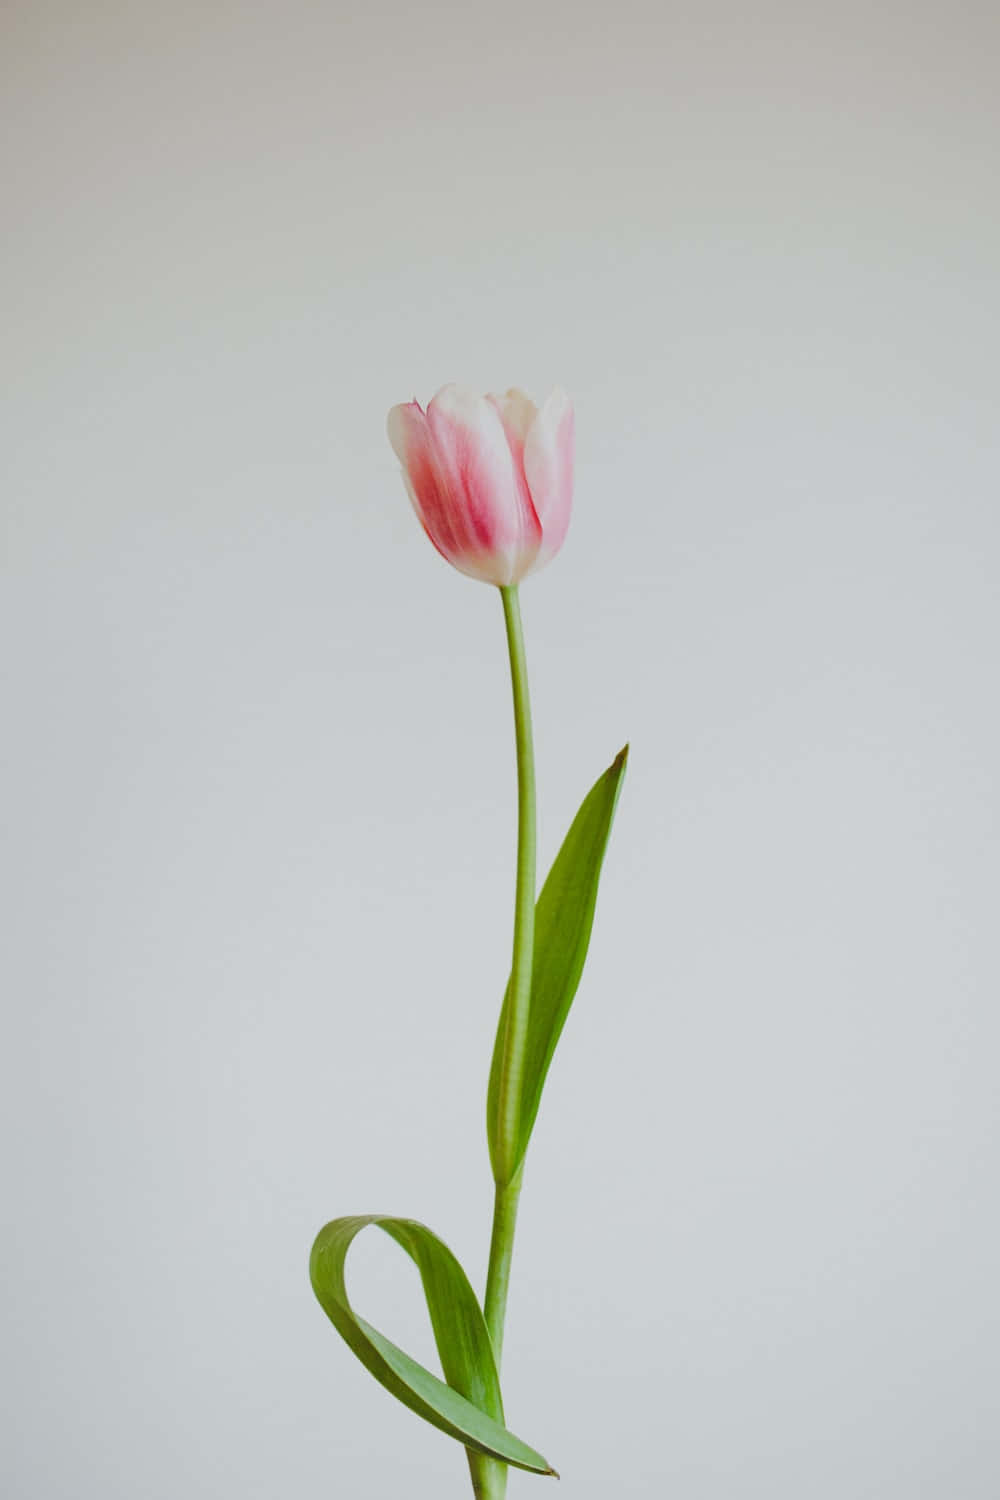 Tulip Pictures